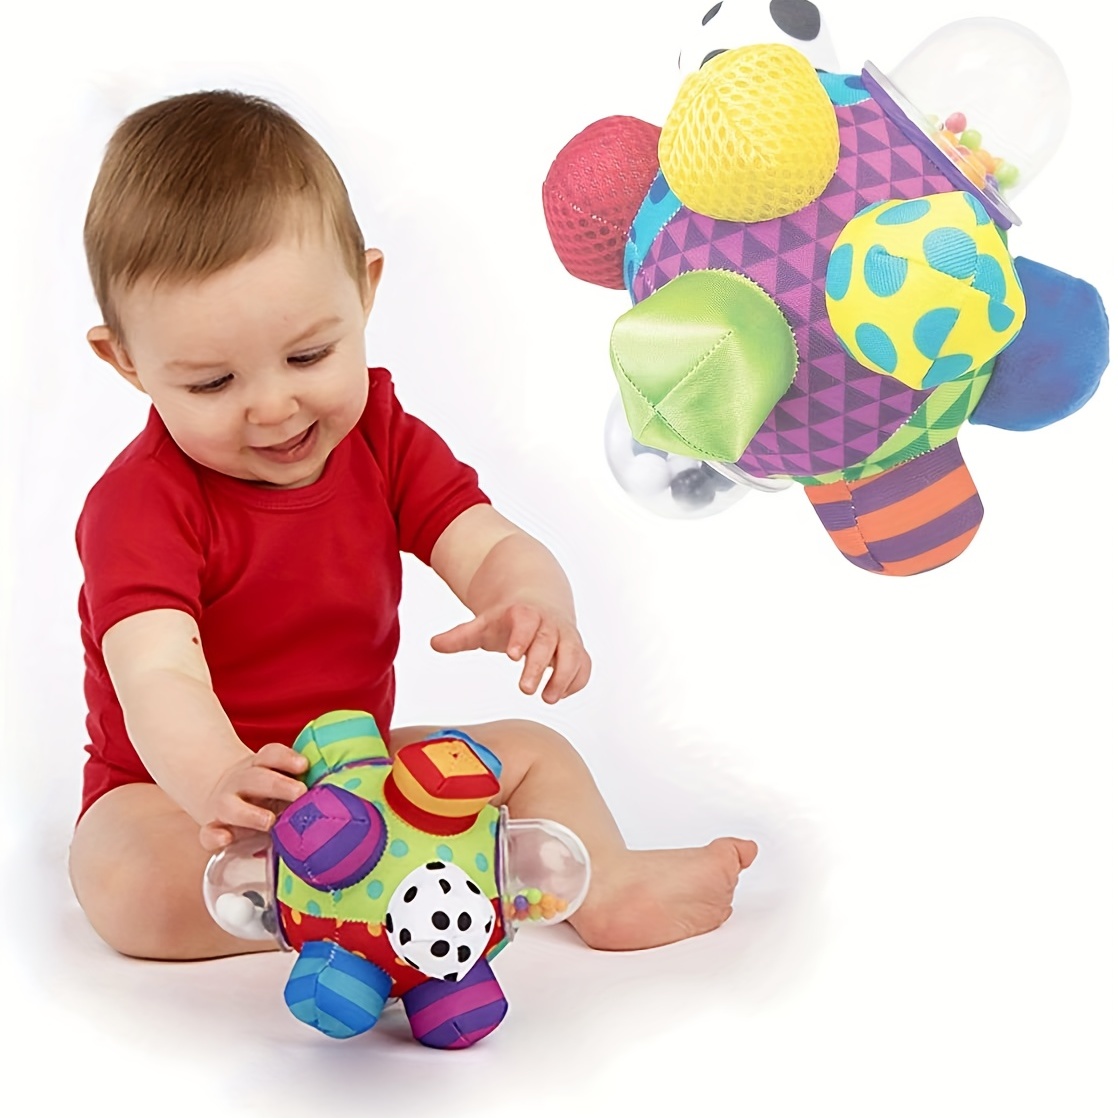 Juguetes por edad: de 0 a 1 año – Toys by age: 0 to 1 - Montessori